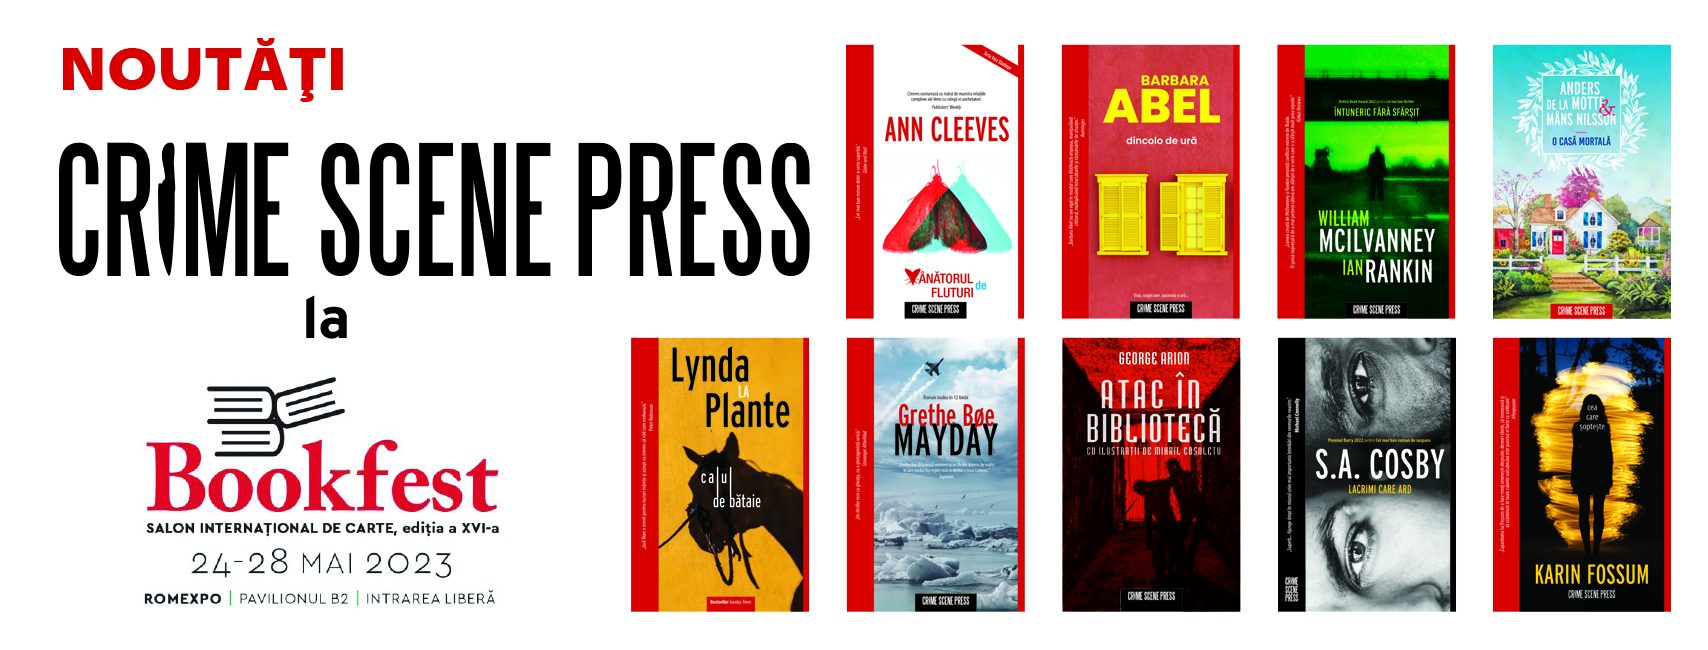 Crime Scene Press, casa romanului polițist, vine cu o sumedenie de titluri noi, palpitante, la Bookfest